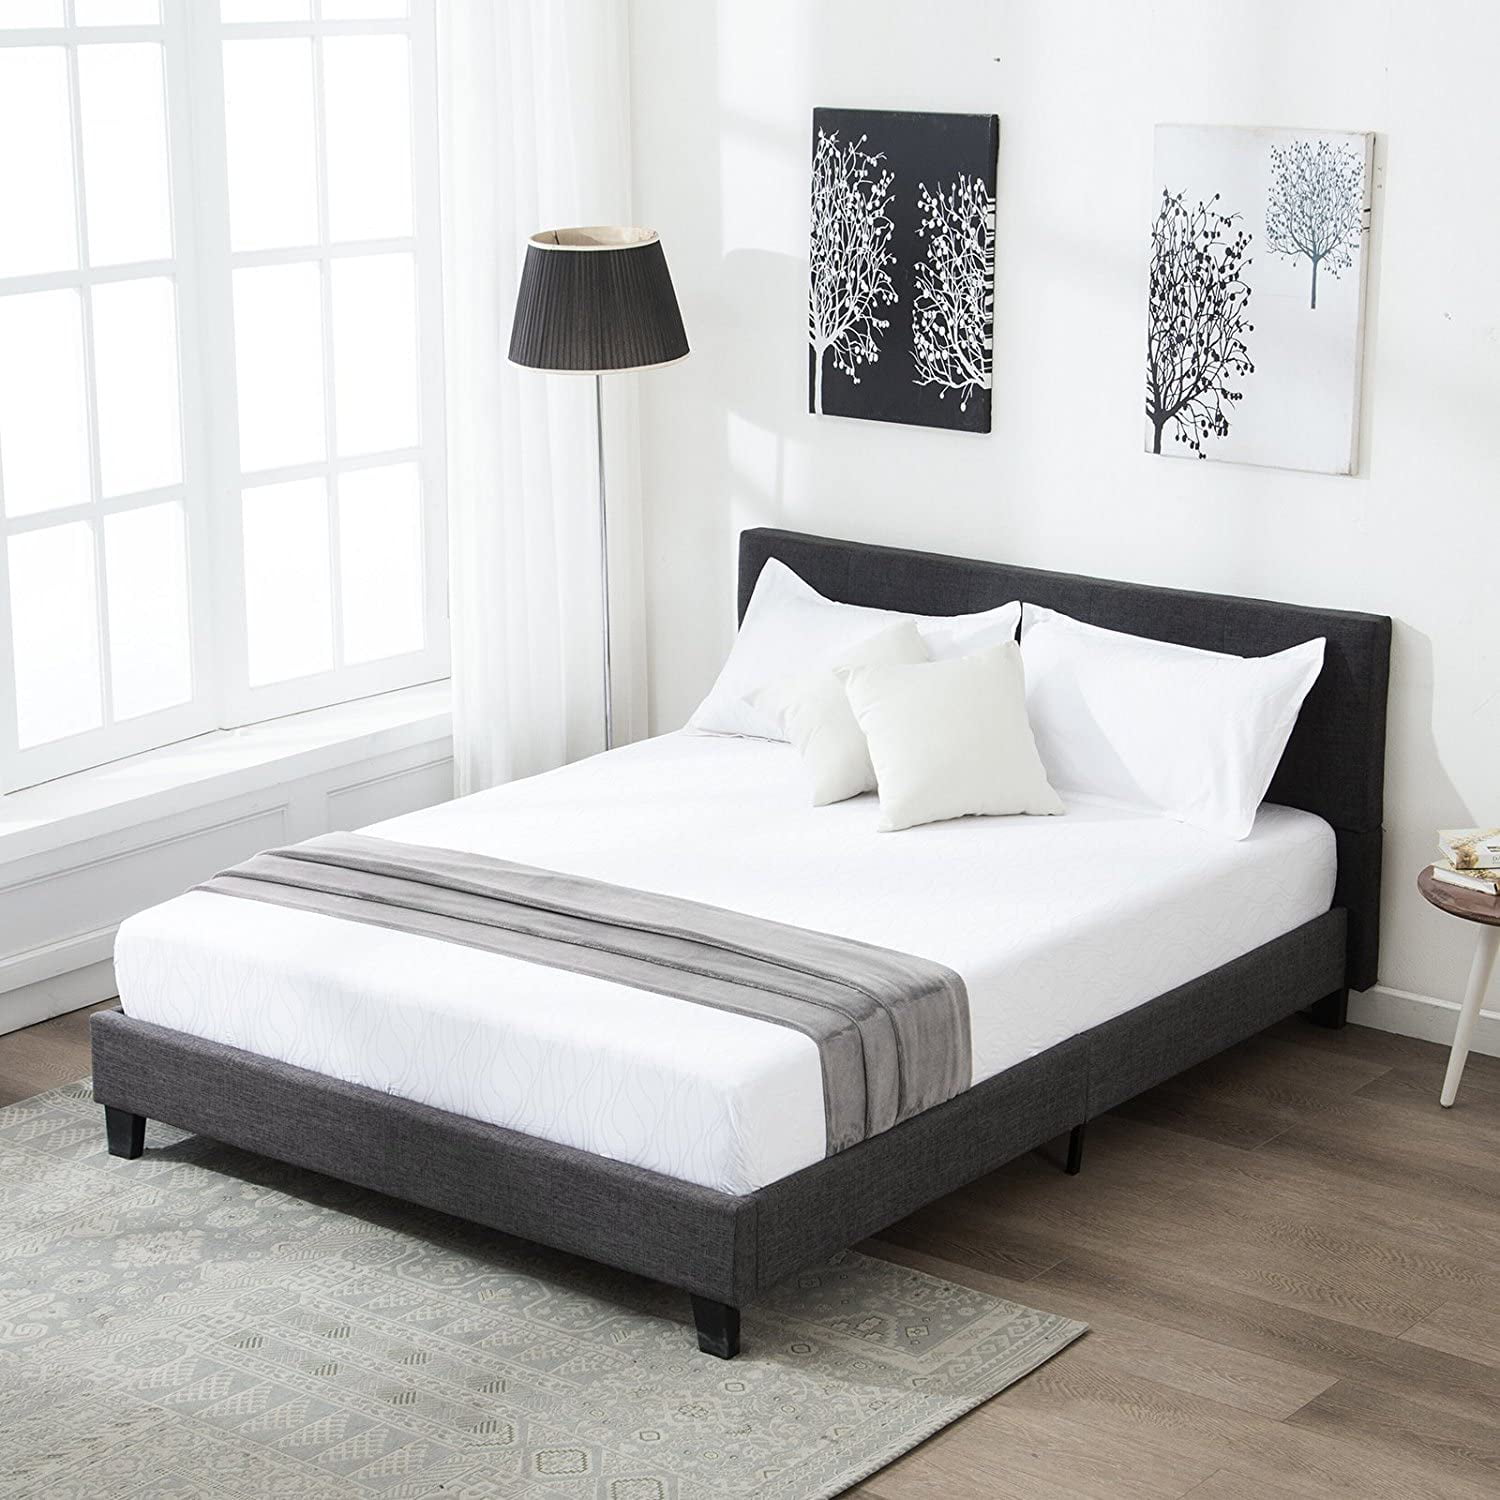 Mecor Upholstered Linen Platform Full Size Bed Metal Frame - with Solid